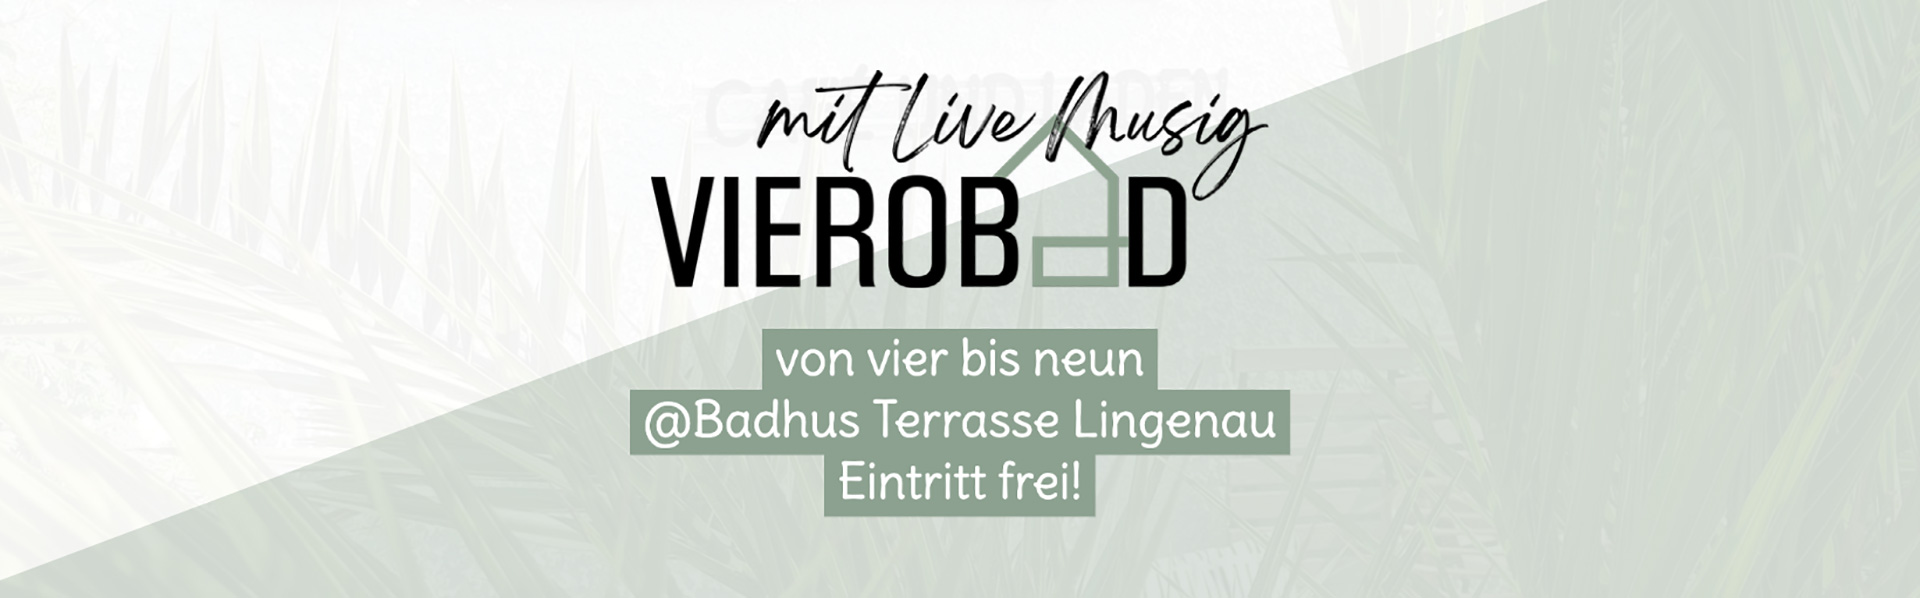 Vierobad mit Live Musik im Badhus . Café und Laden in Lingenau.